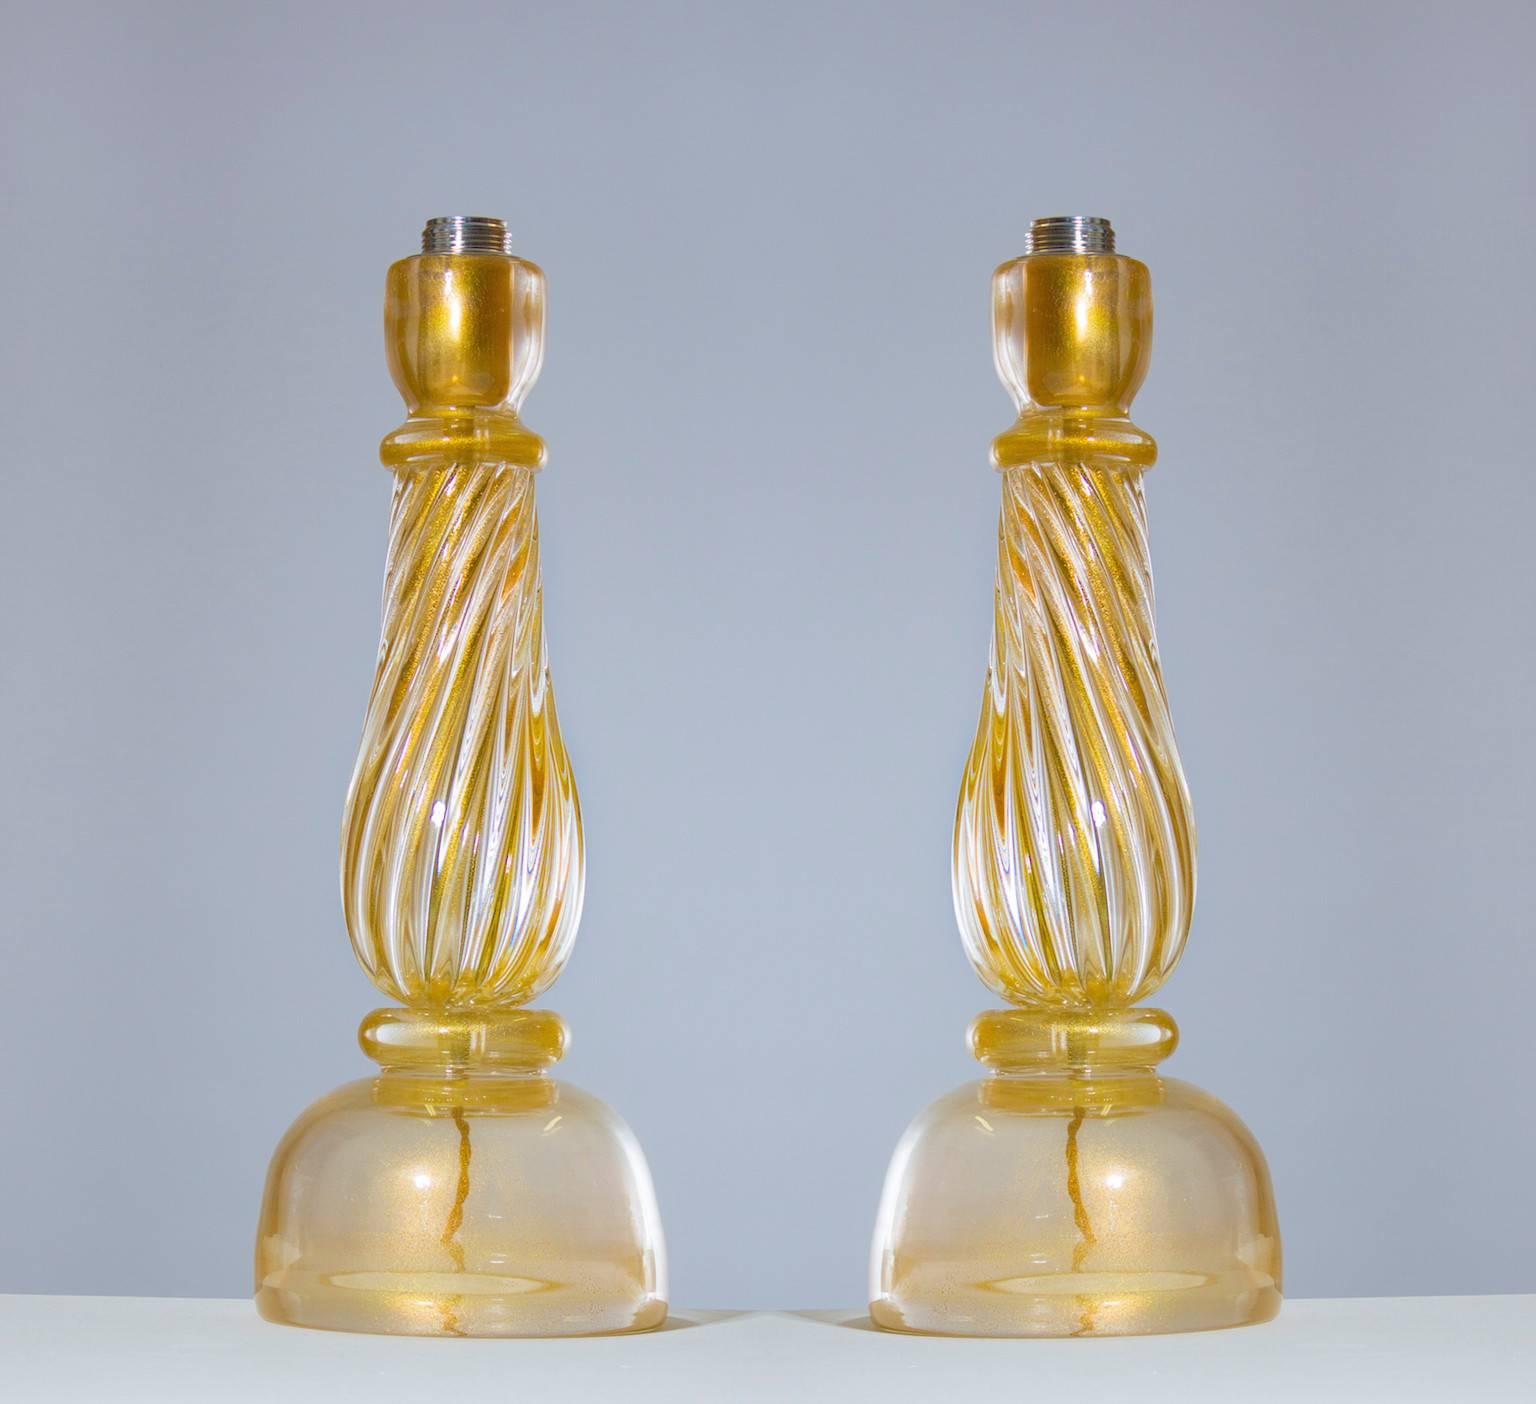 Italienisches Venedig, massives Paar Tischlampen, geblasenes Muranoglas, Gold 24-karätig Seguso, 1960er Jahre.
Dieses fantastische Set von Tischlampen, ist komplett handgefertigt in mundgeblasenem Muranoglas, in der Murano-Insel in Venedig; sein